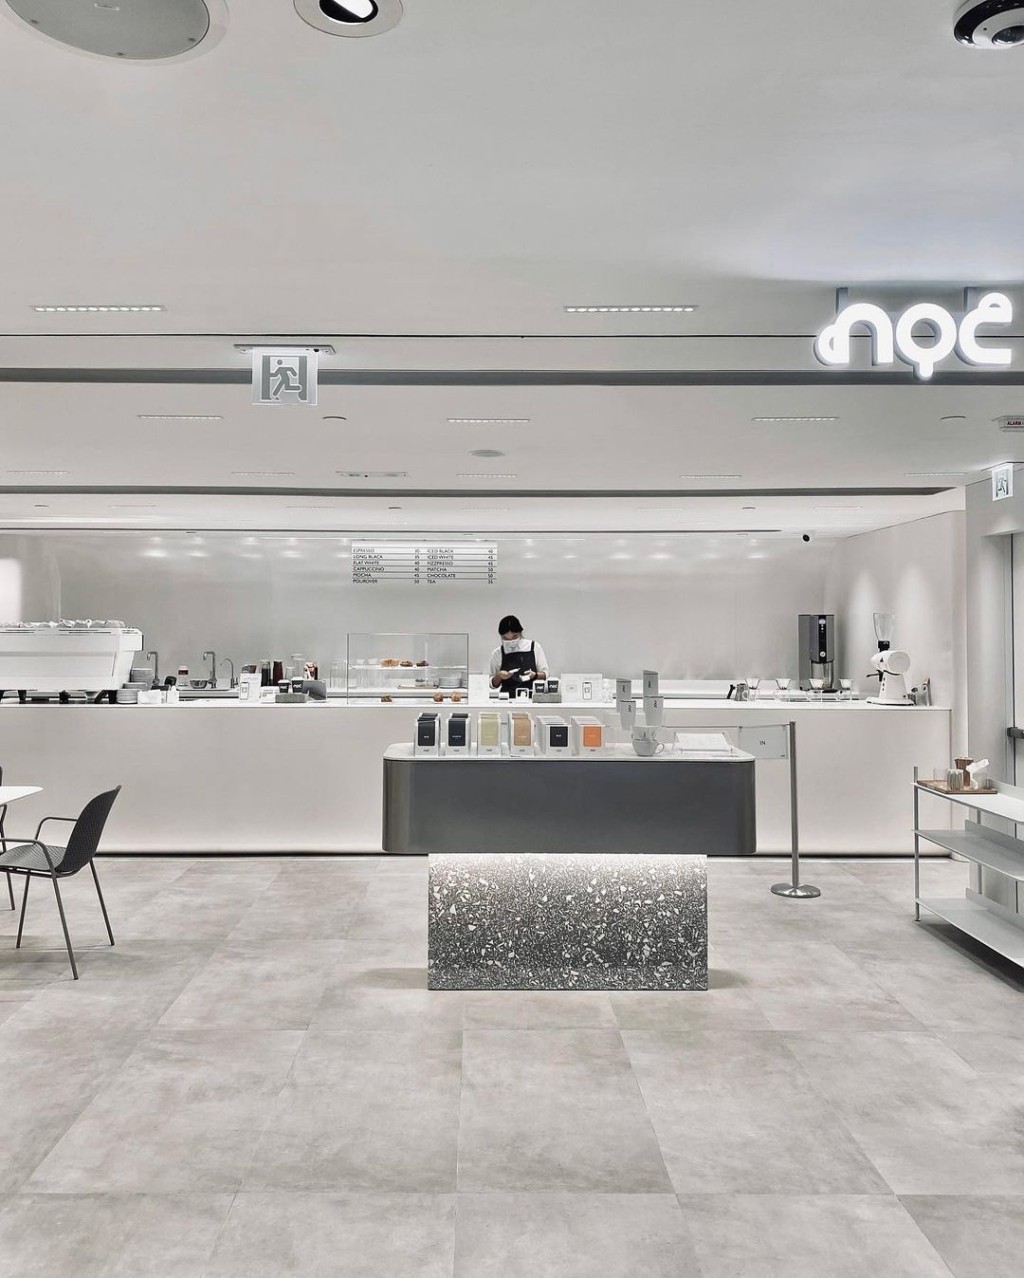 人气文青咖啡店 NOC Coffee Co. （图片来源：Instagram@noccoffeeco）（示意图）